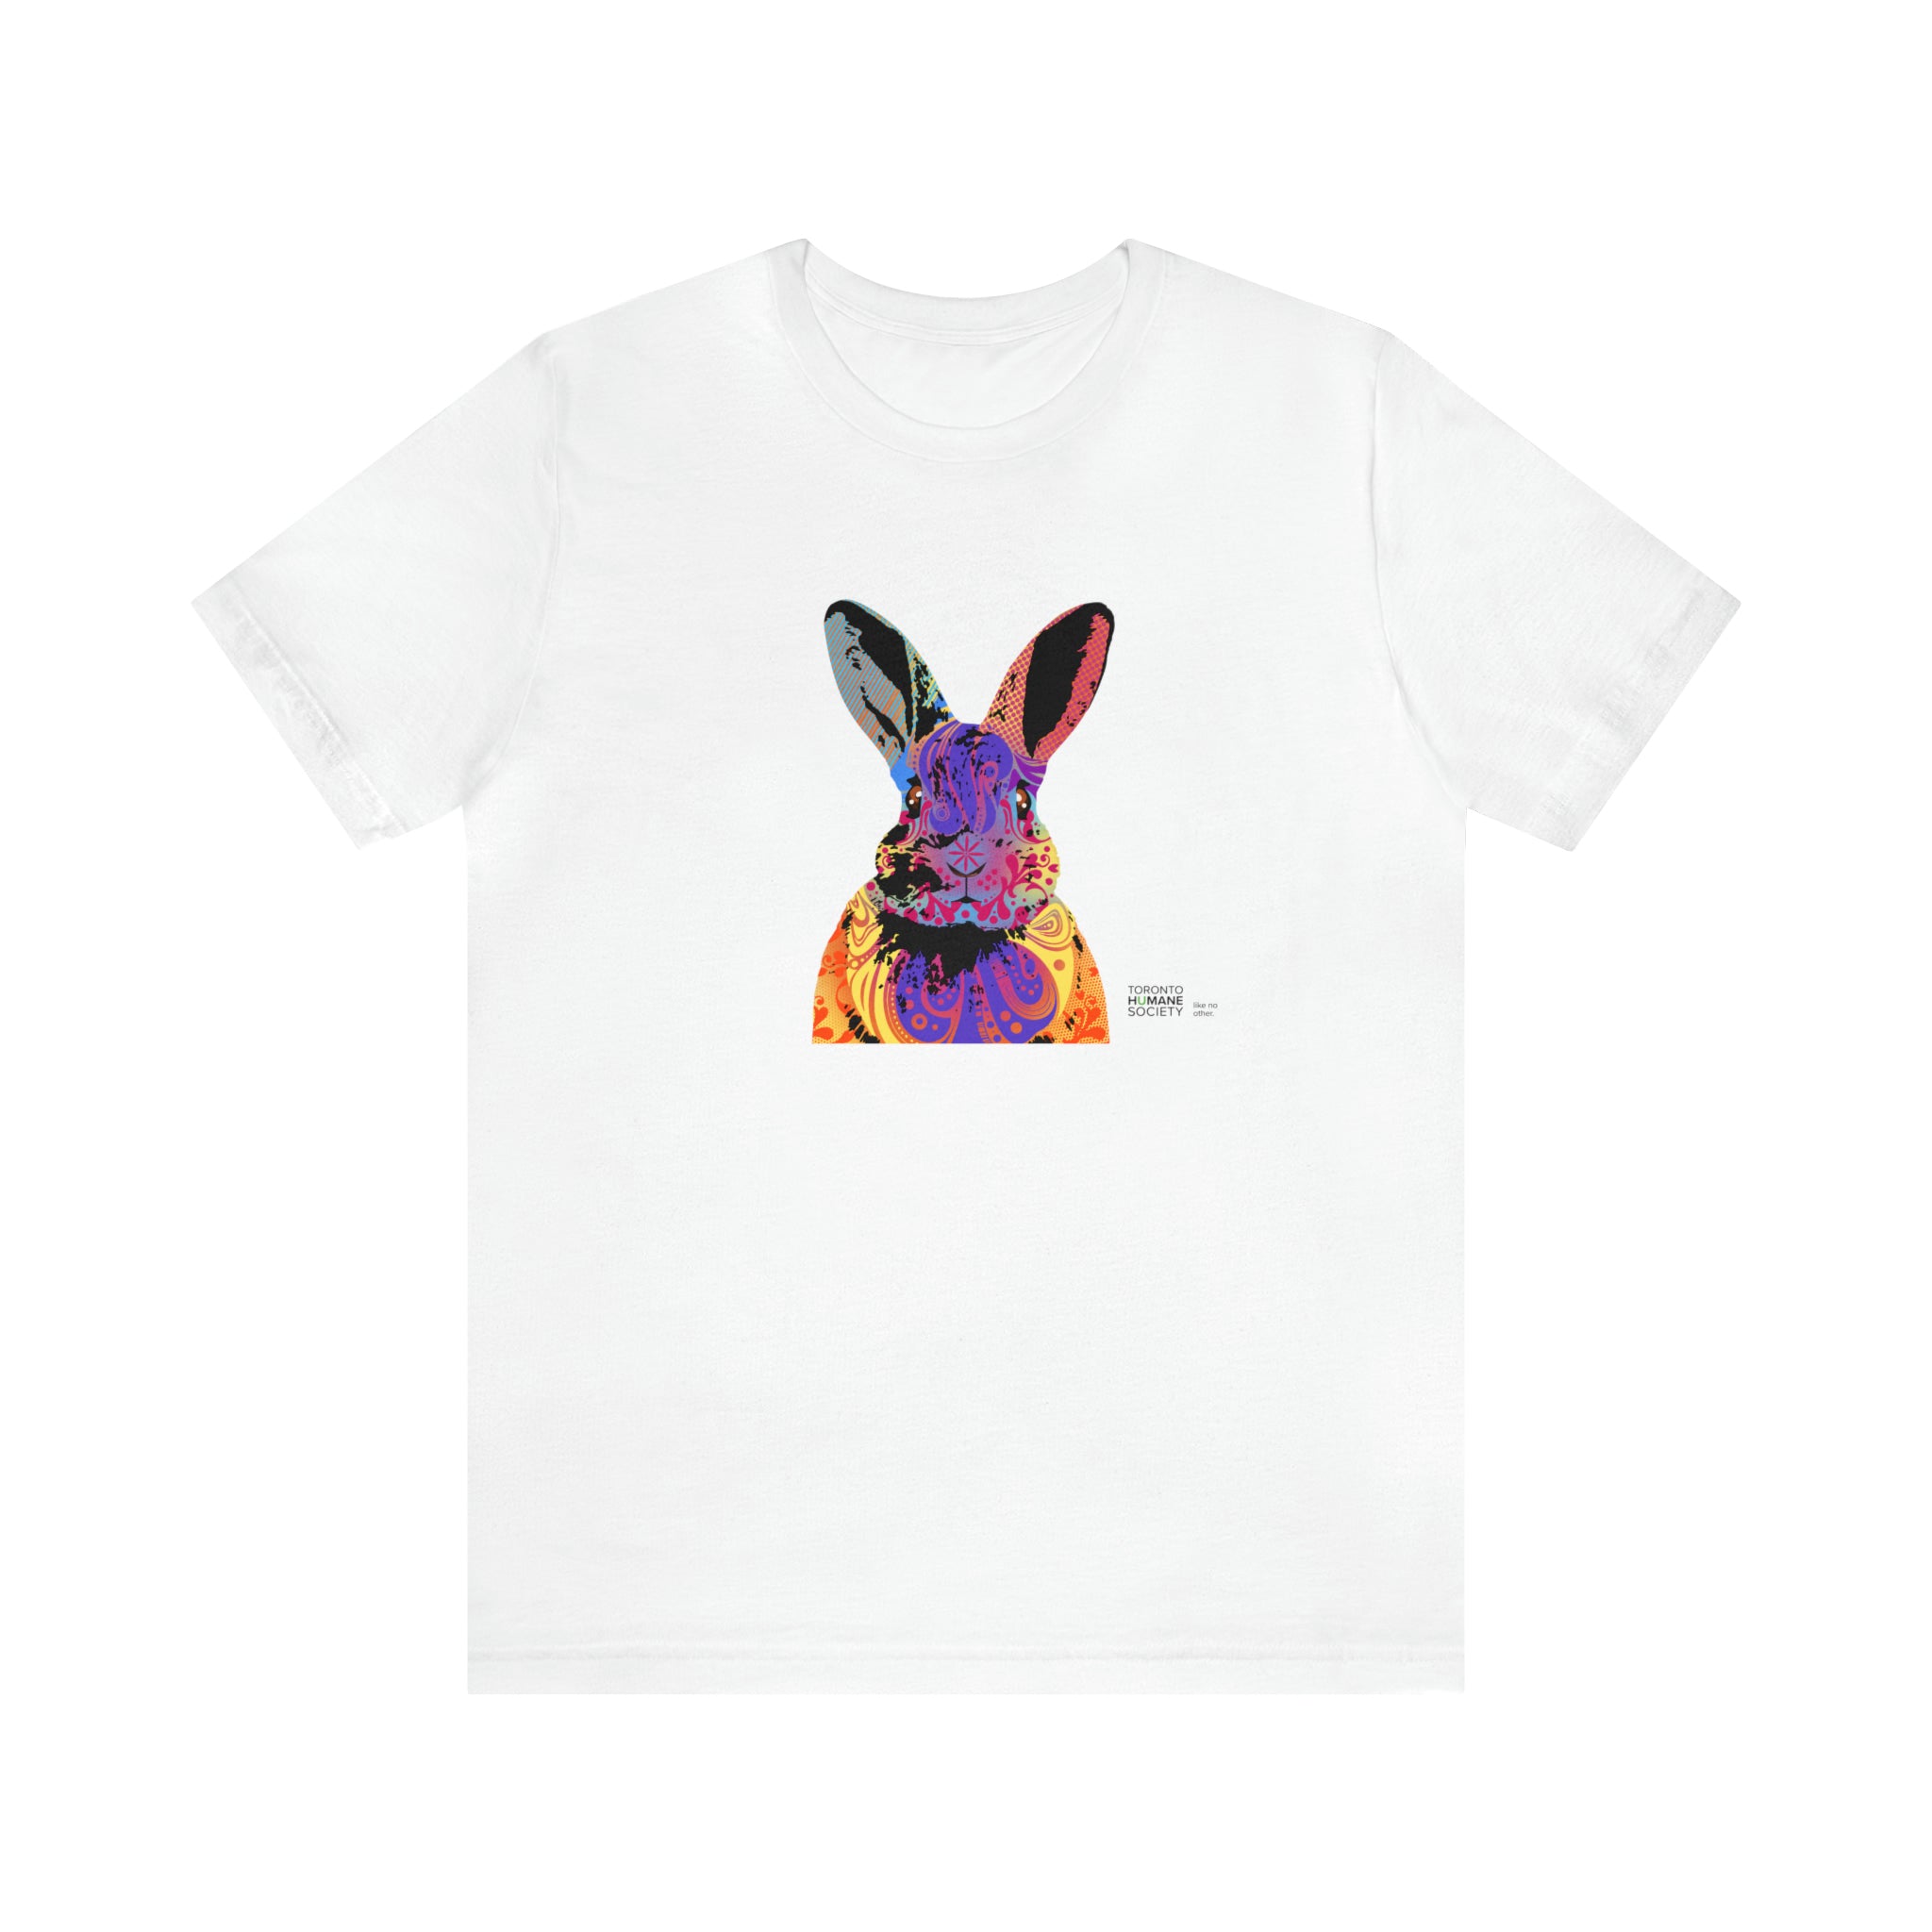 Unisex Jersey Short Sleeve Tee - Abstract Rabbit